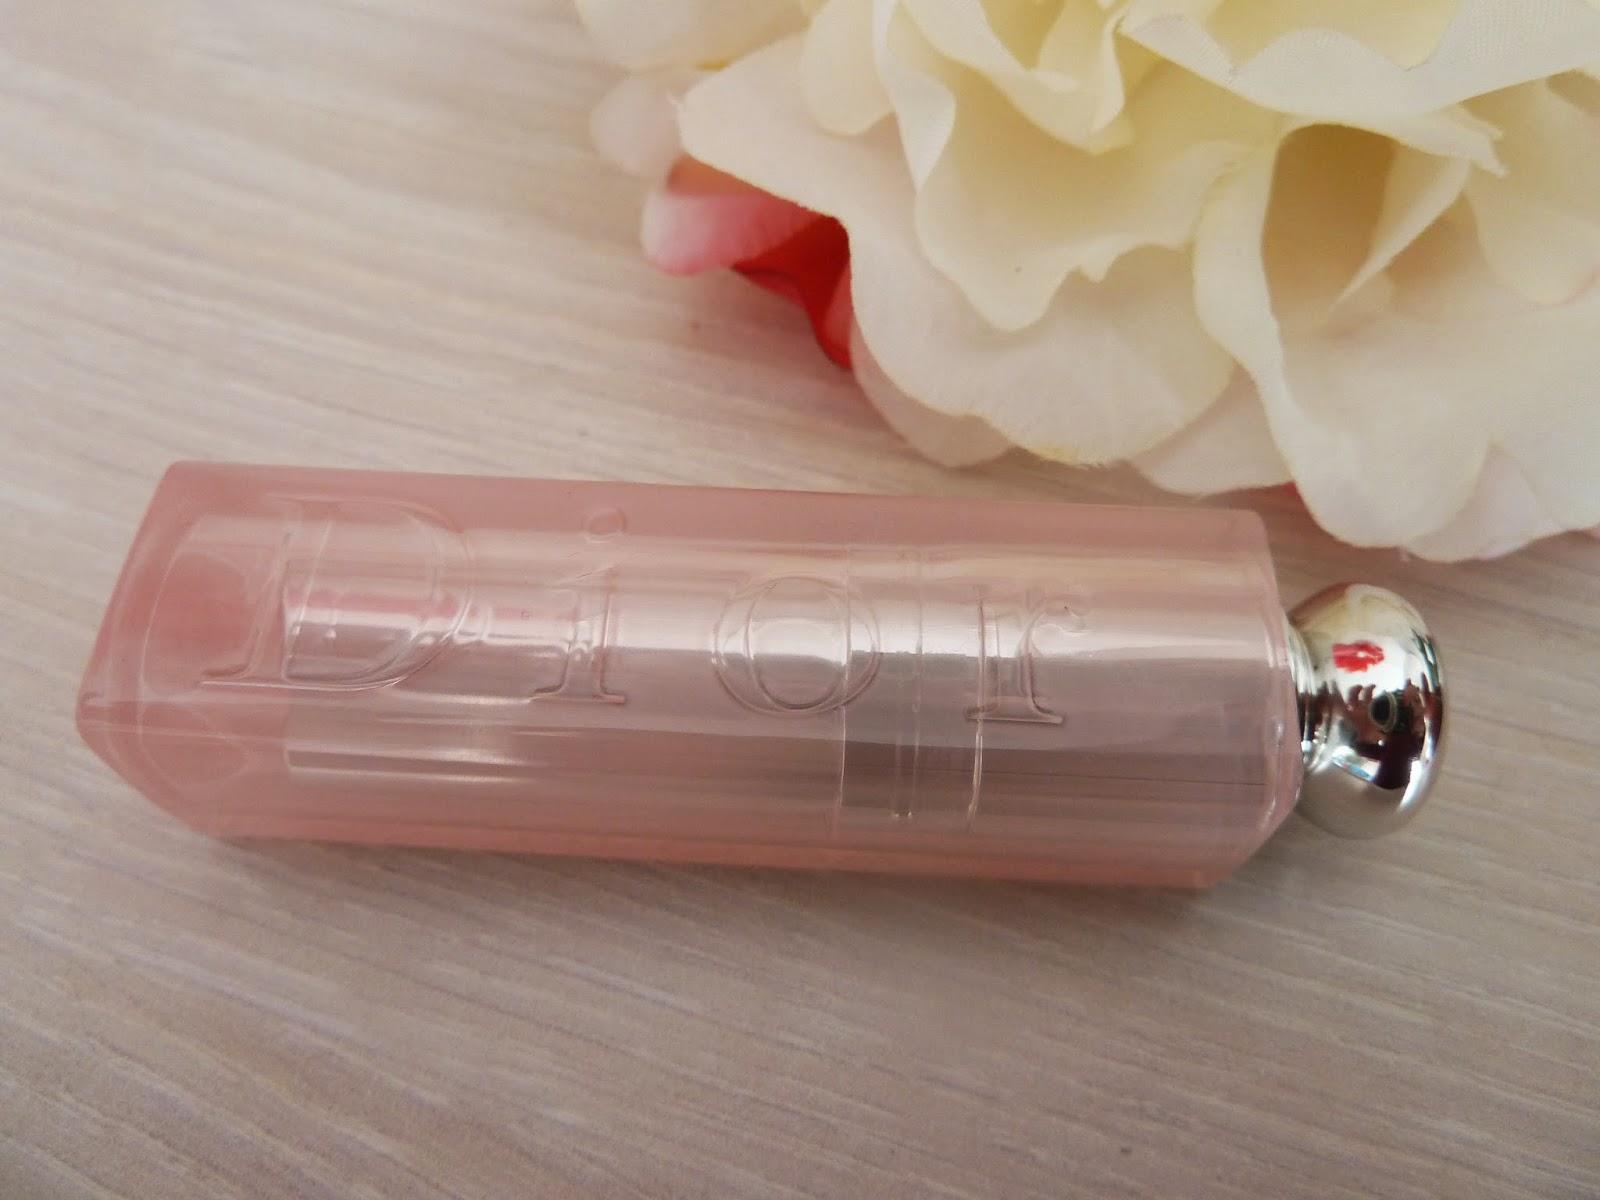 De jolies lèvres hydratées et légèrement colorées - Lip Glow Dior Addict